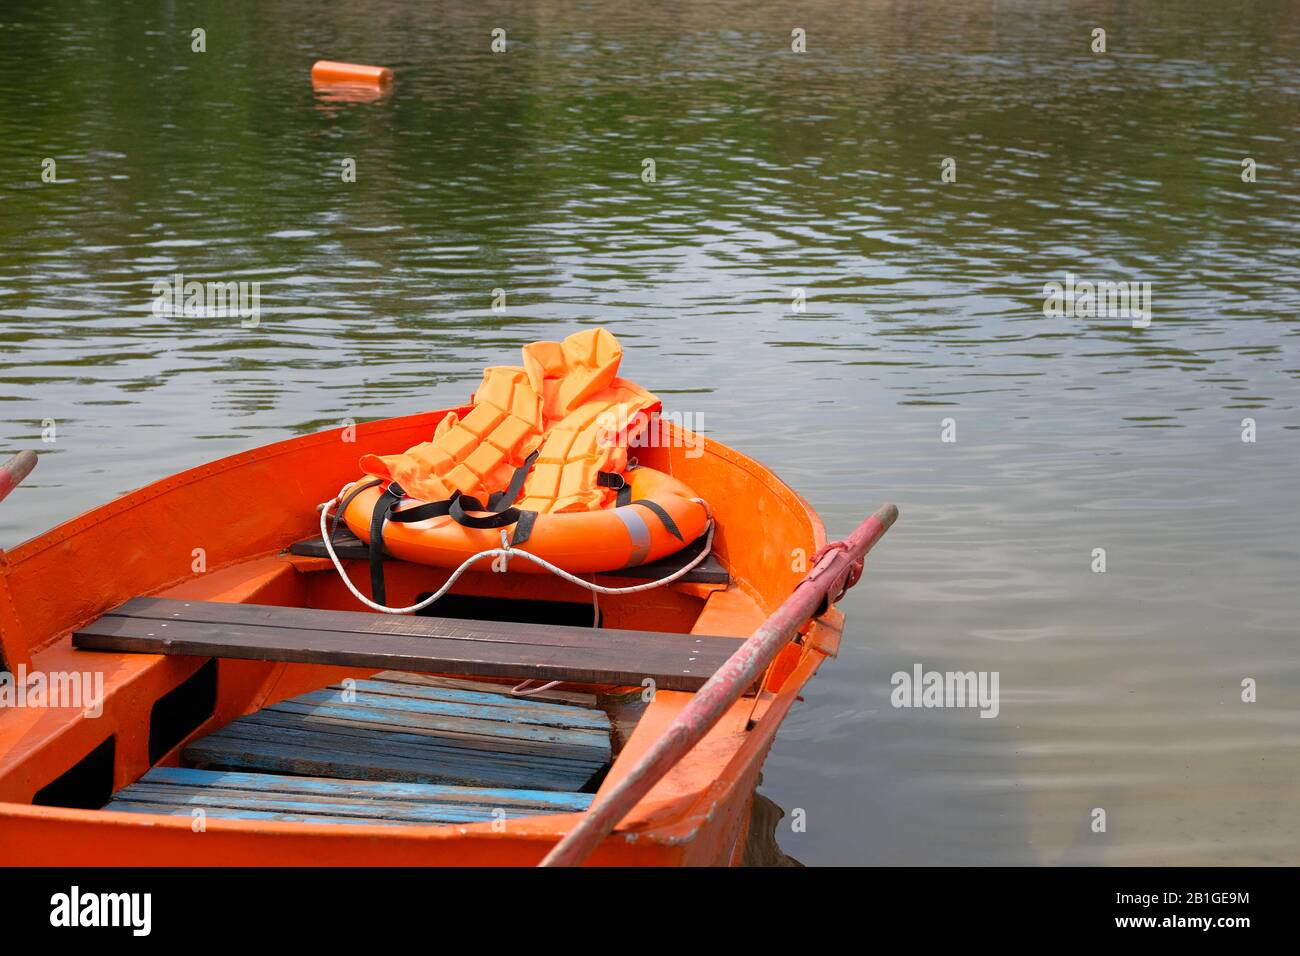 Barca, giubbotto salvagente, salvagente di colore arancione importante per la sicurezza della vita in acqua in estate. Concetto di salvataggio in acqua in estate. Foto Stock